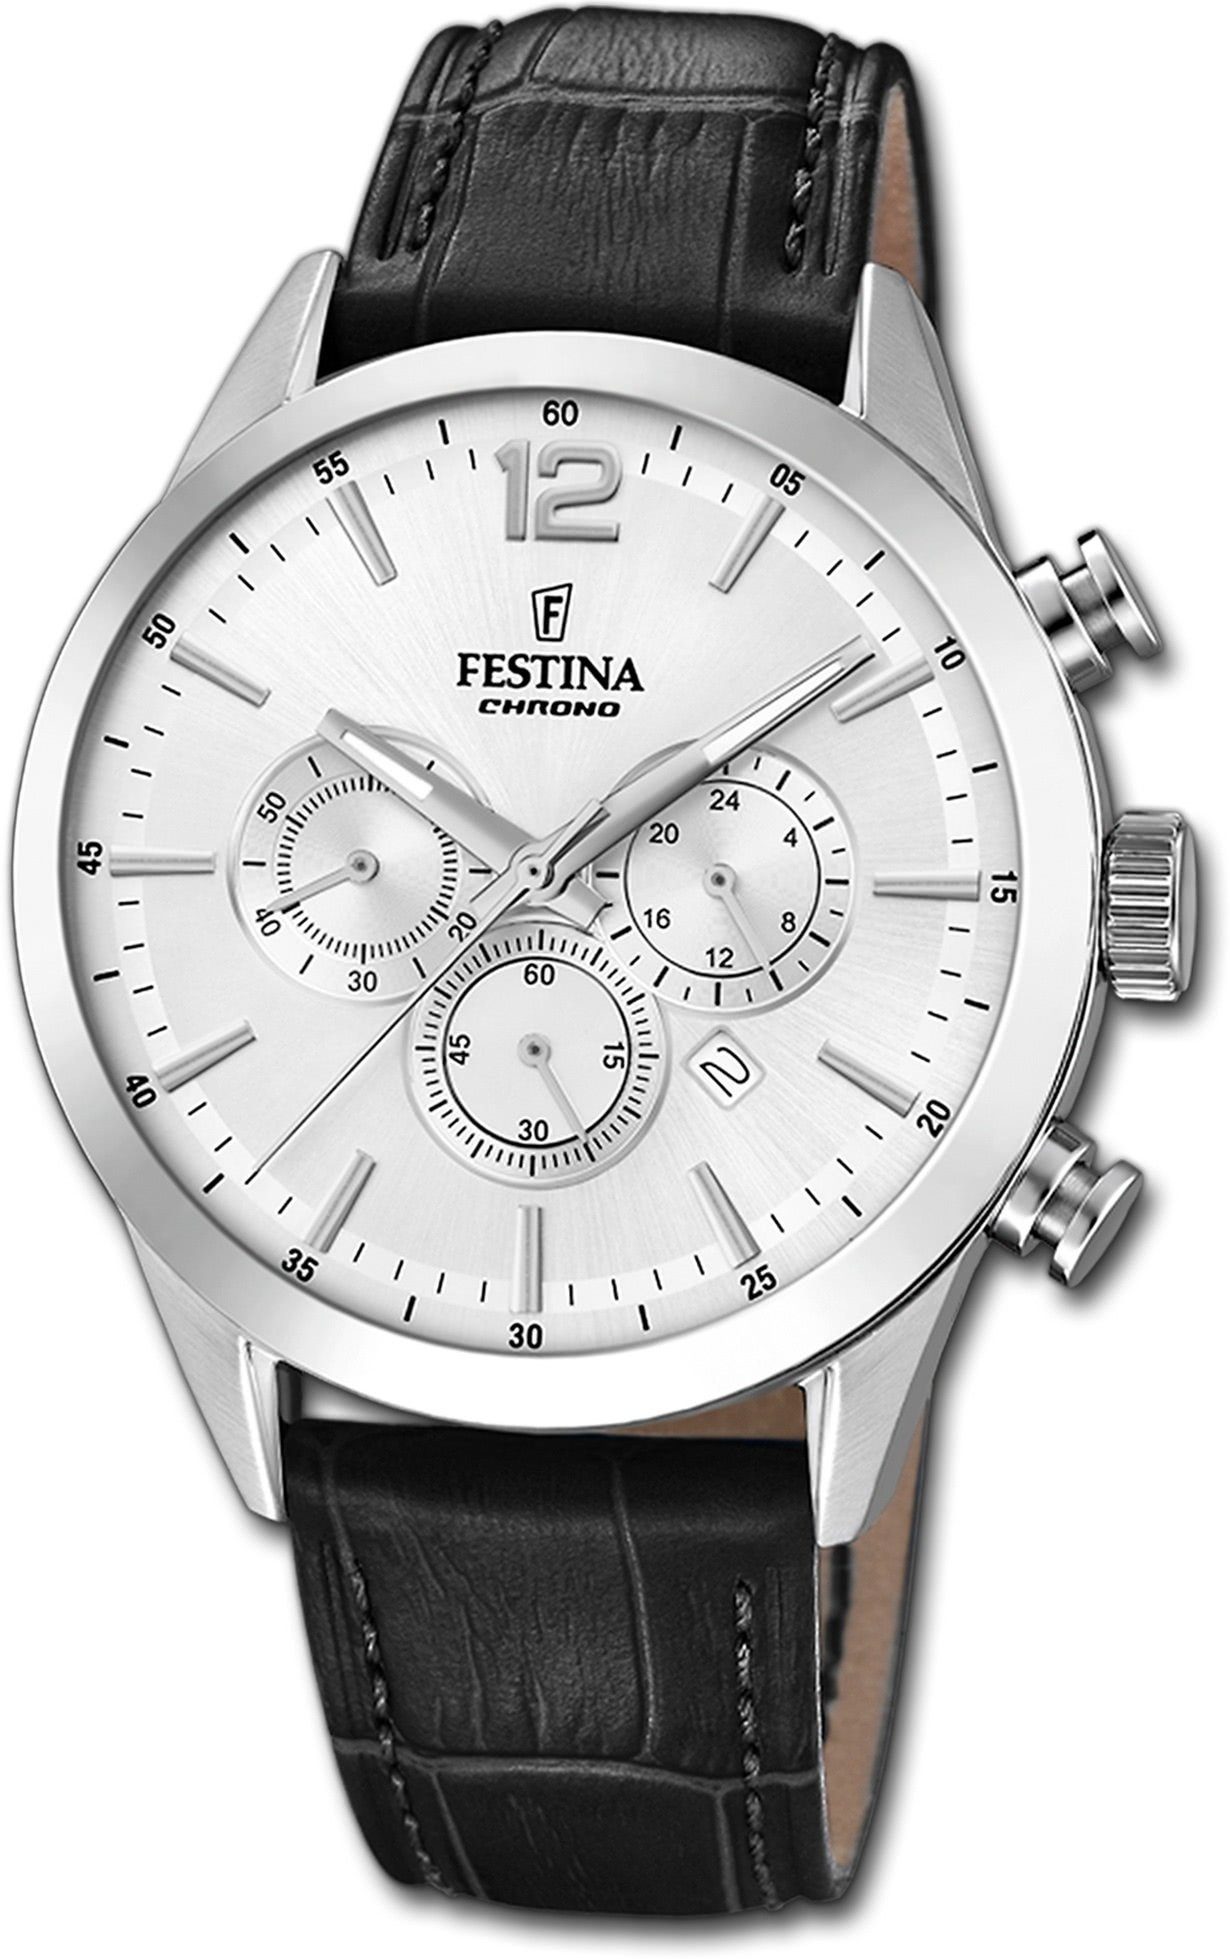 Festina Chronograph (ca. Festina mit Gehäuse, Lederarmband, groß Uhr F20542/1, Fashion-S rundes Herrenuhr Herren 44mm), Leder